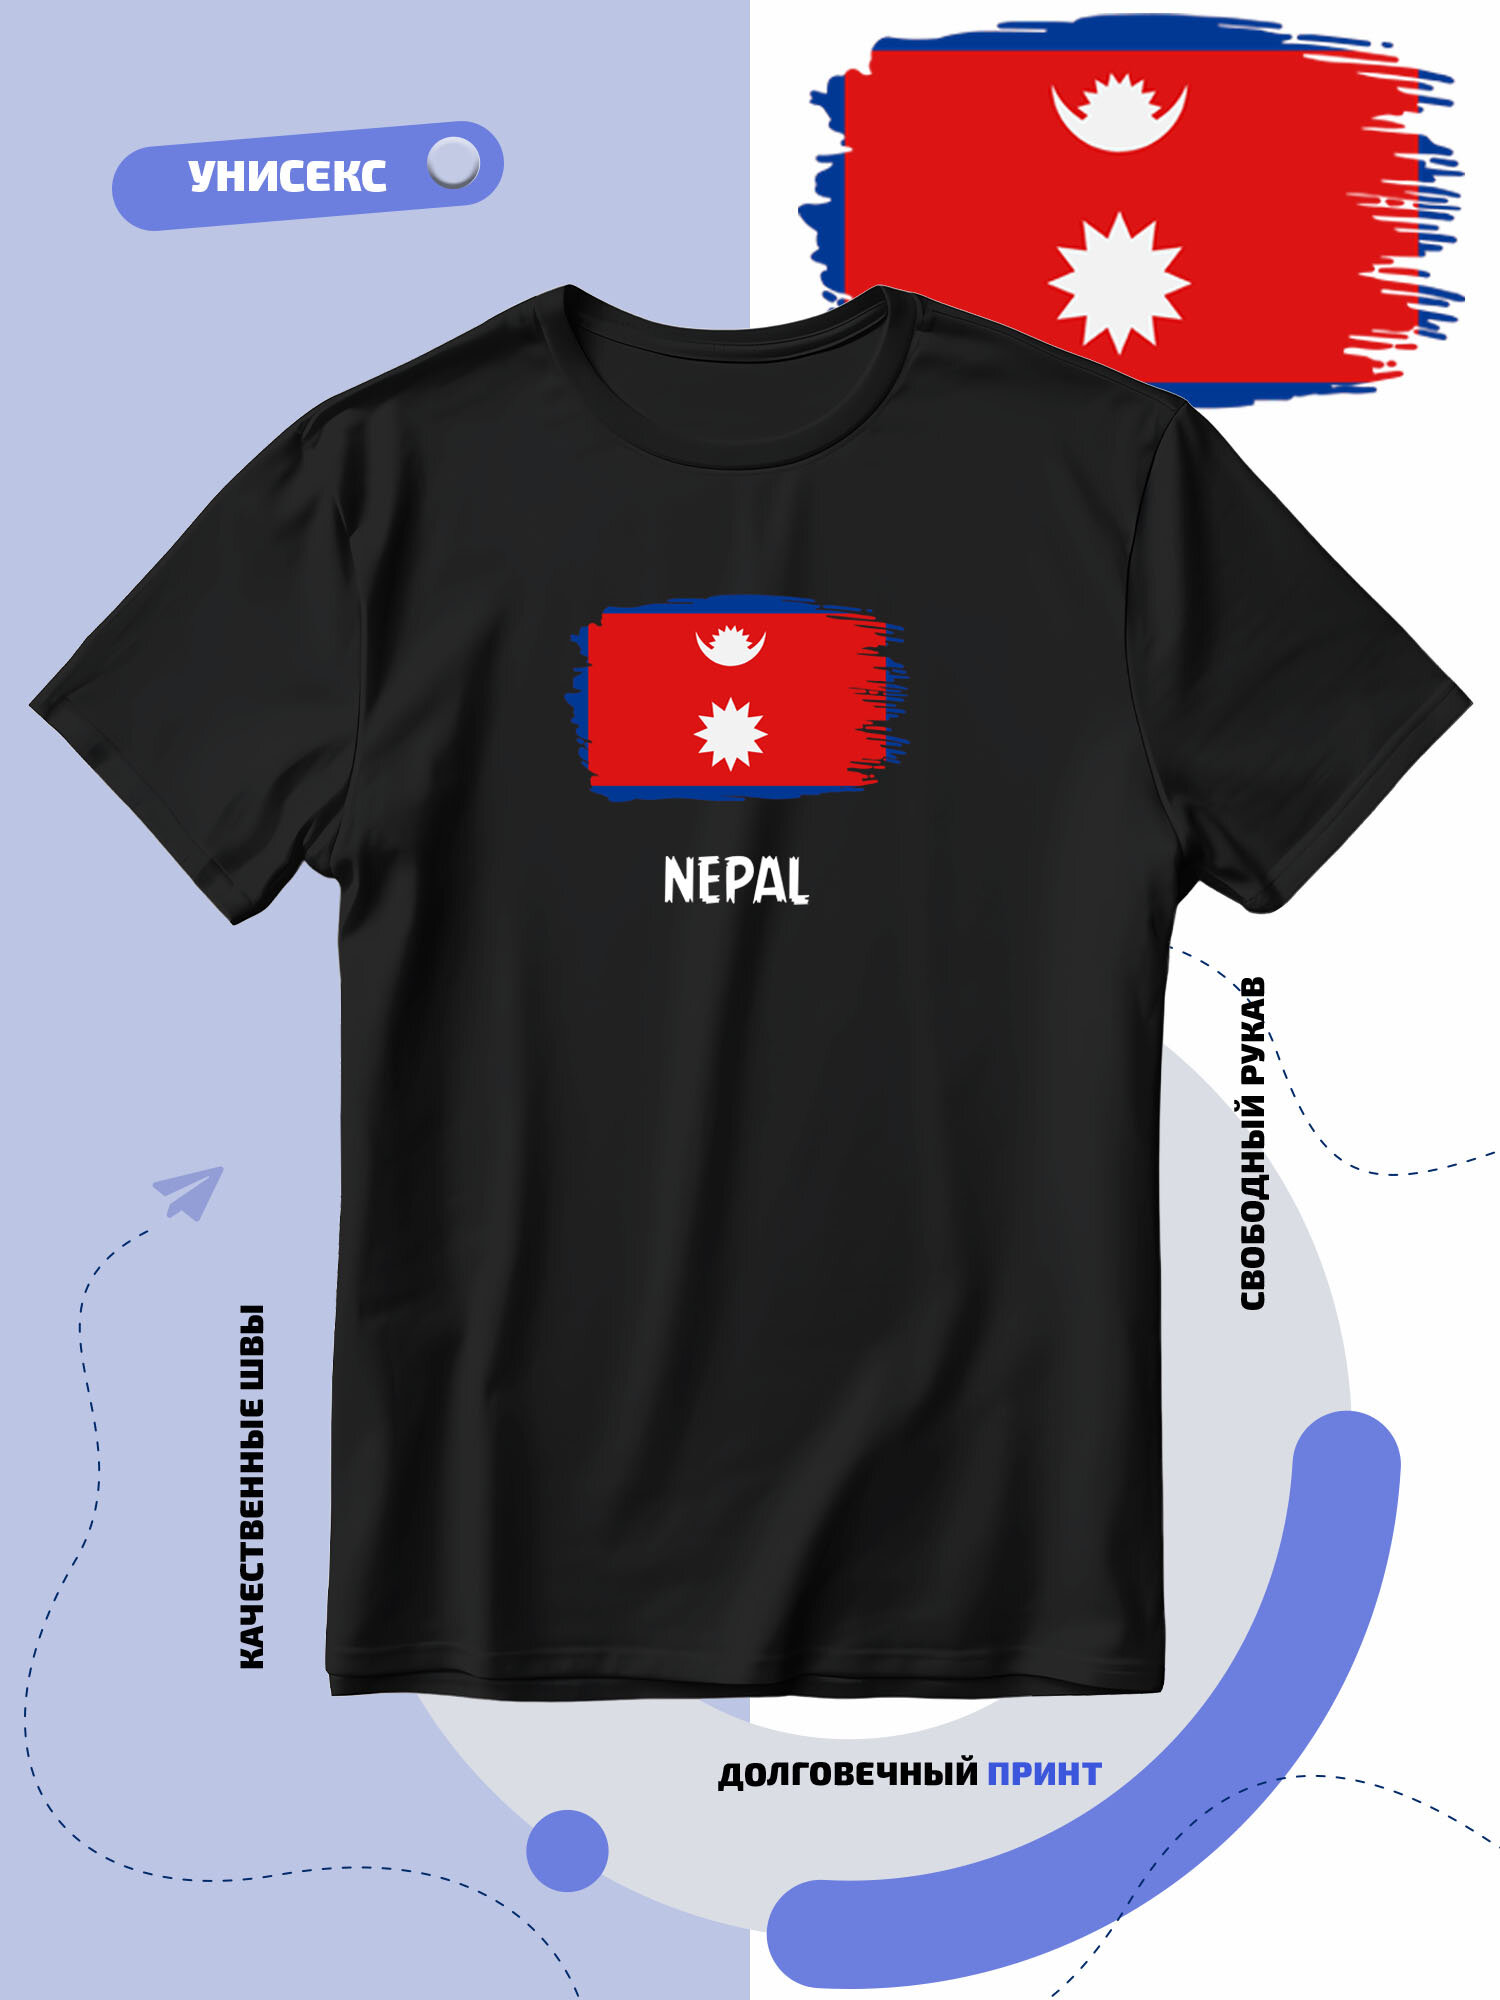 Футболка SMAIL-P с флагом Непала-Nepal